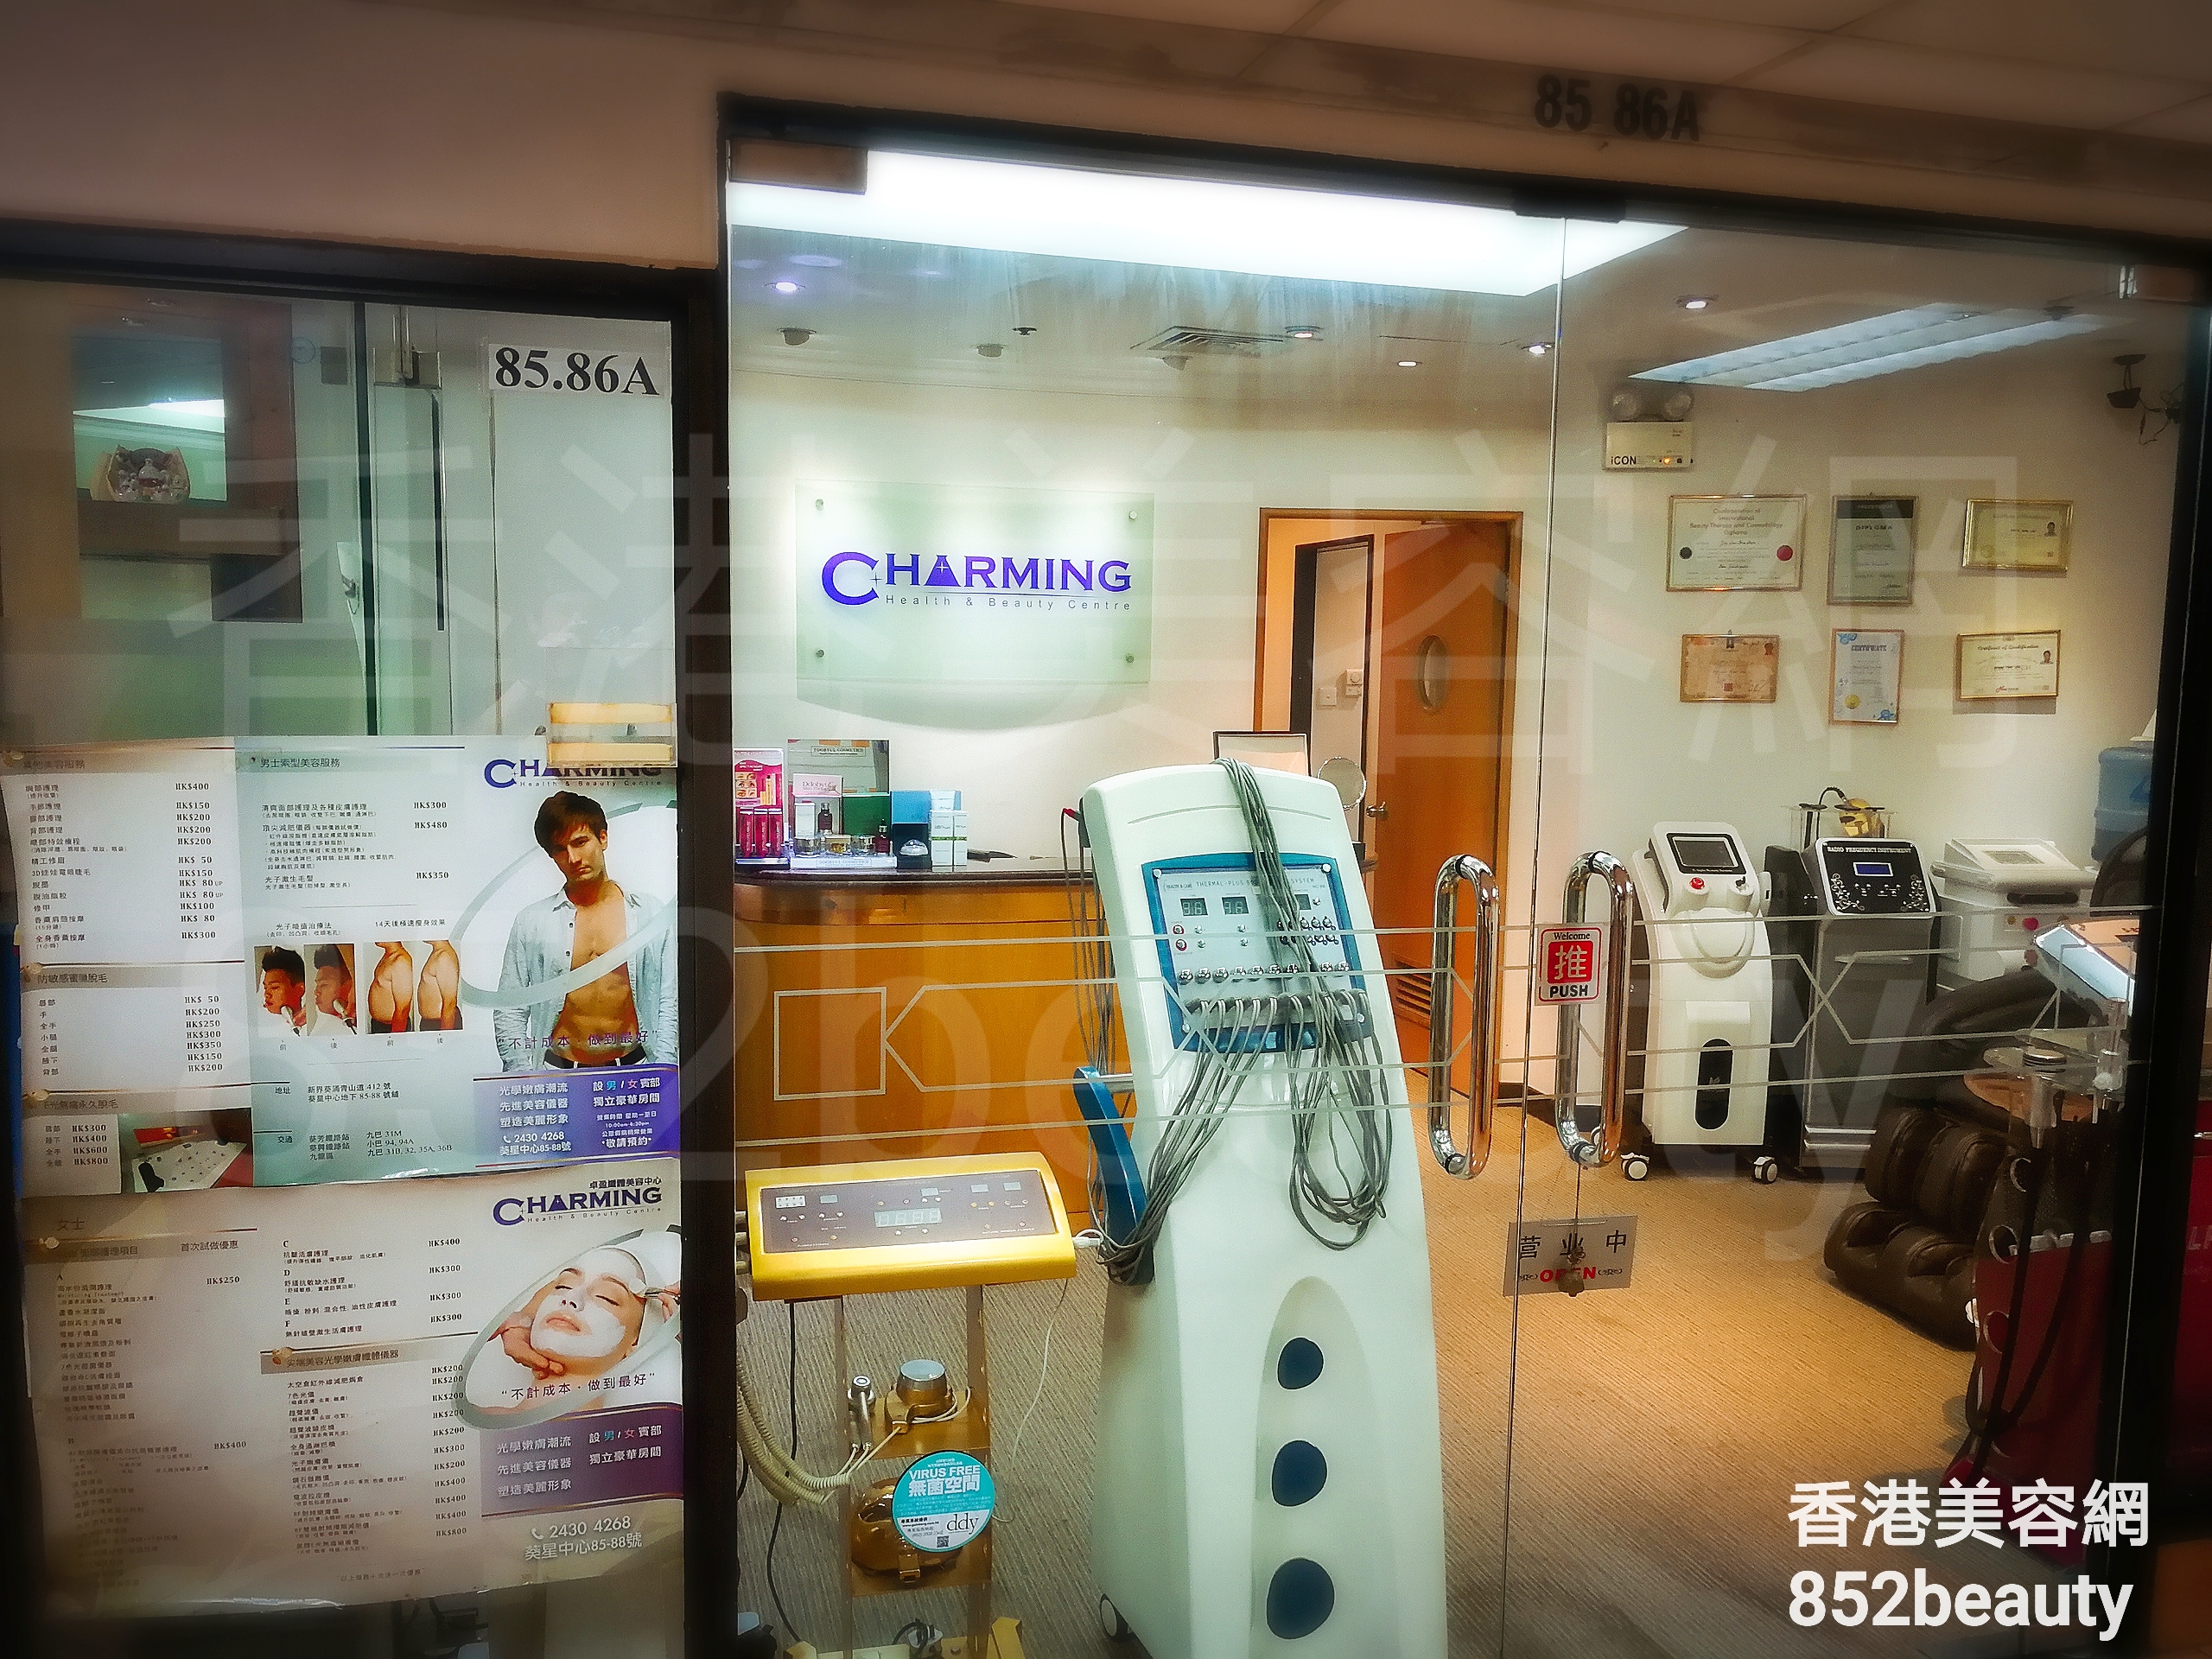 光学美容: Charming Health & Beauty Centre